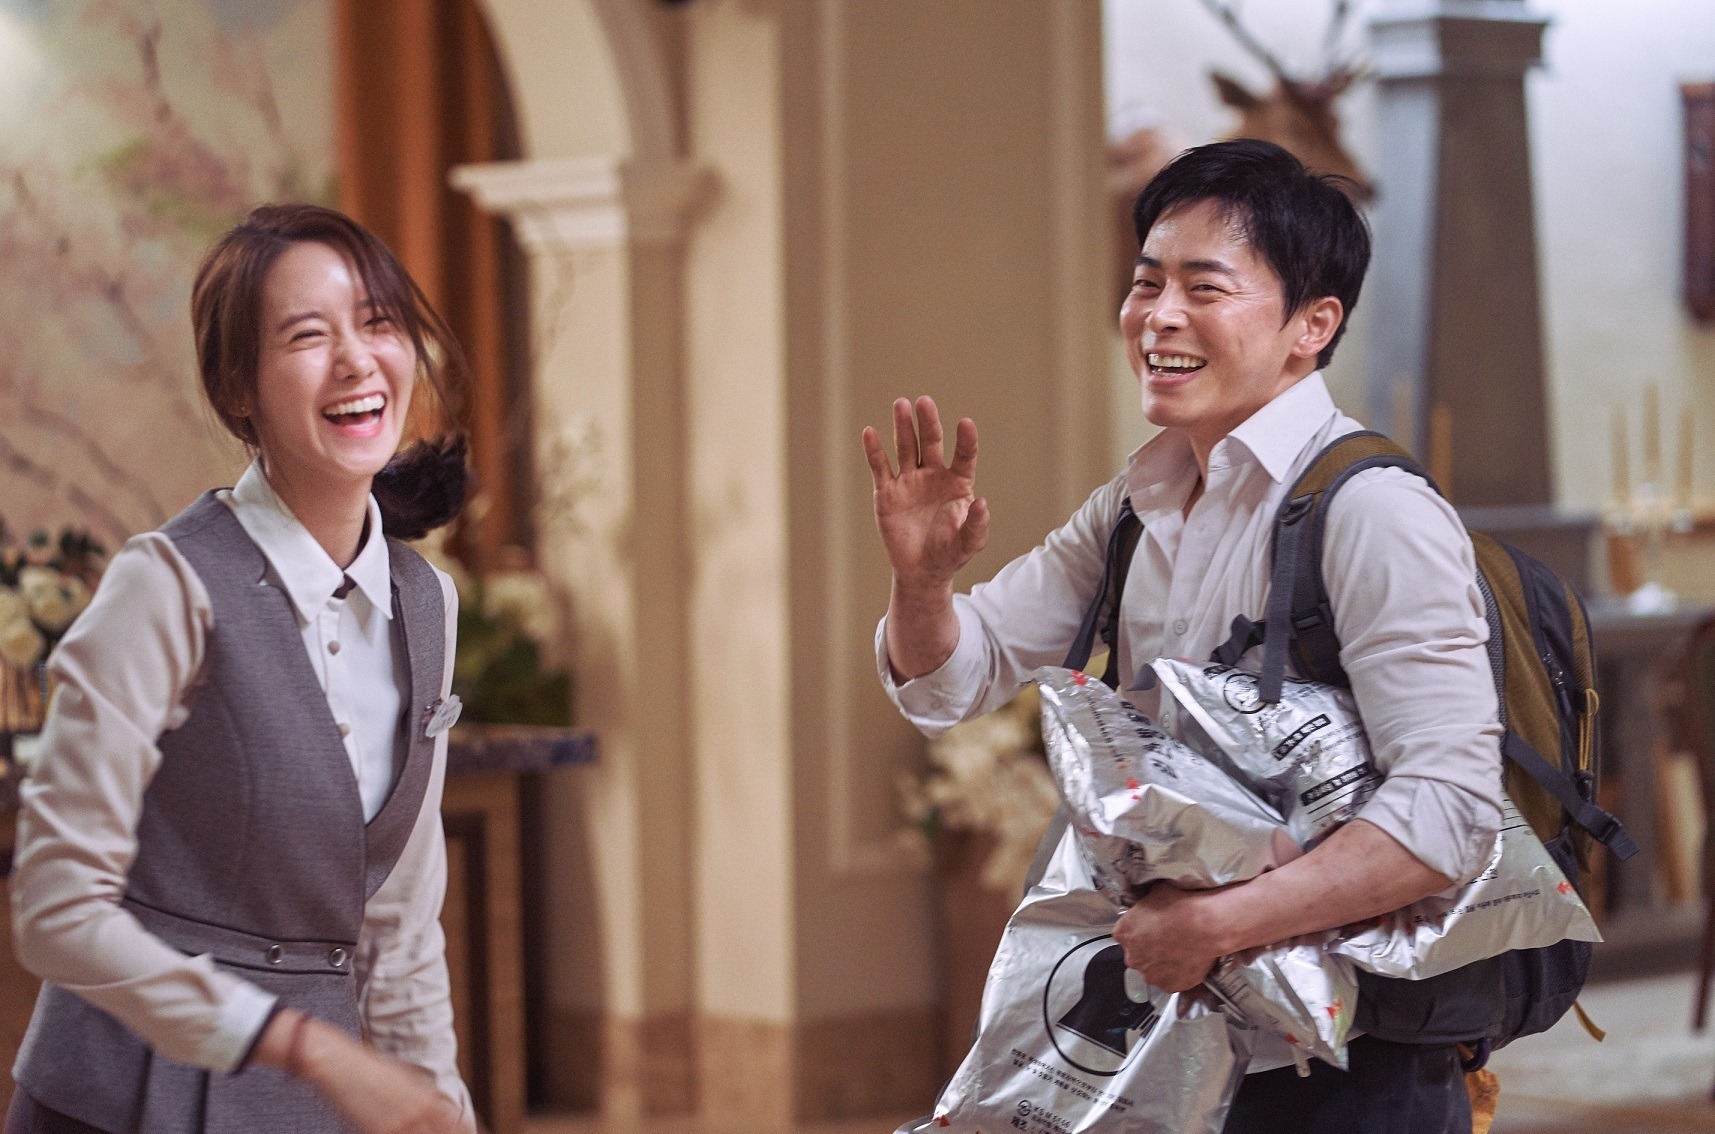 ユナ、チョ・ジョンソクは「最高のパートナー」『EXIT』メイキング映像 | cinemacafe.net